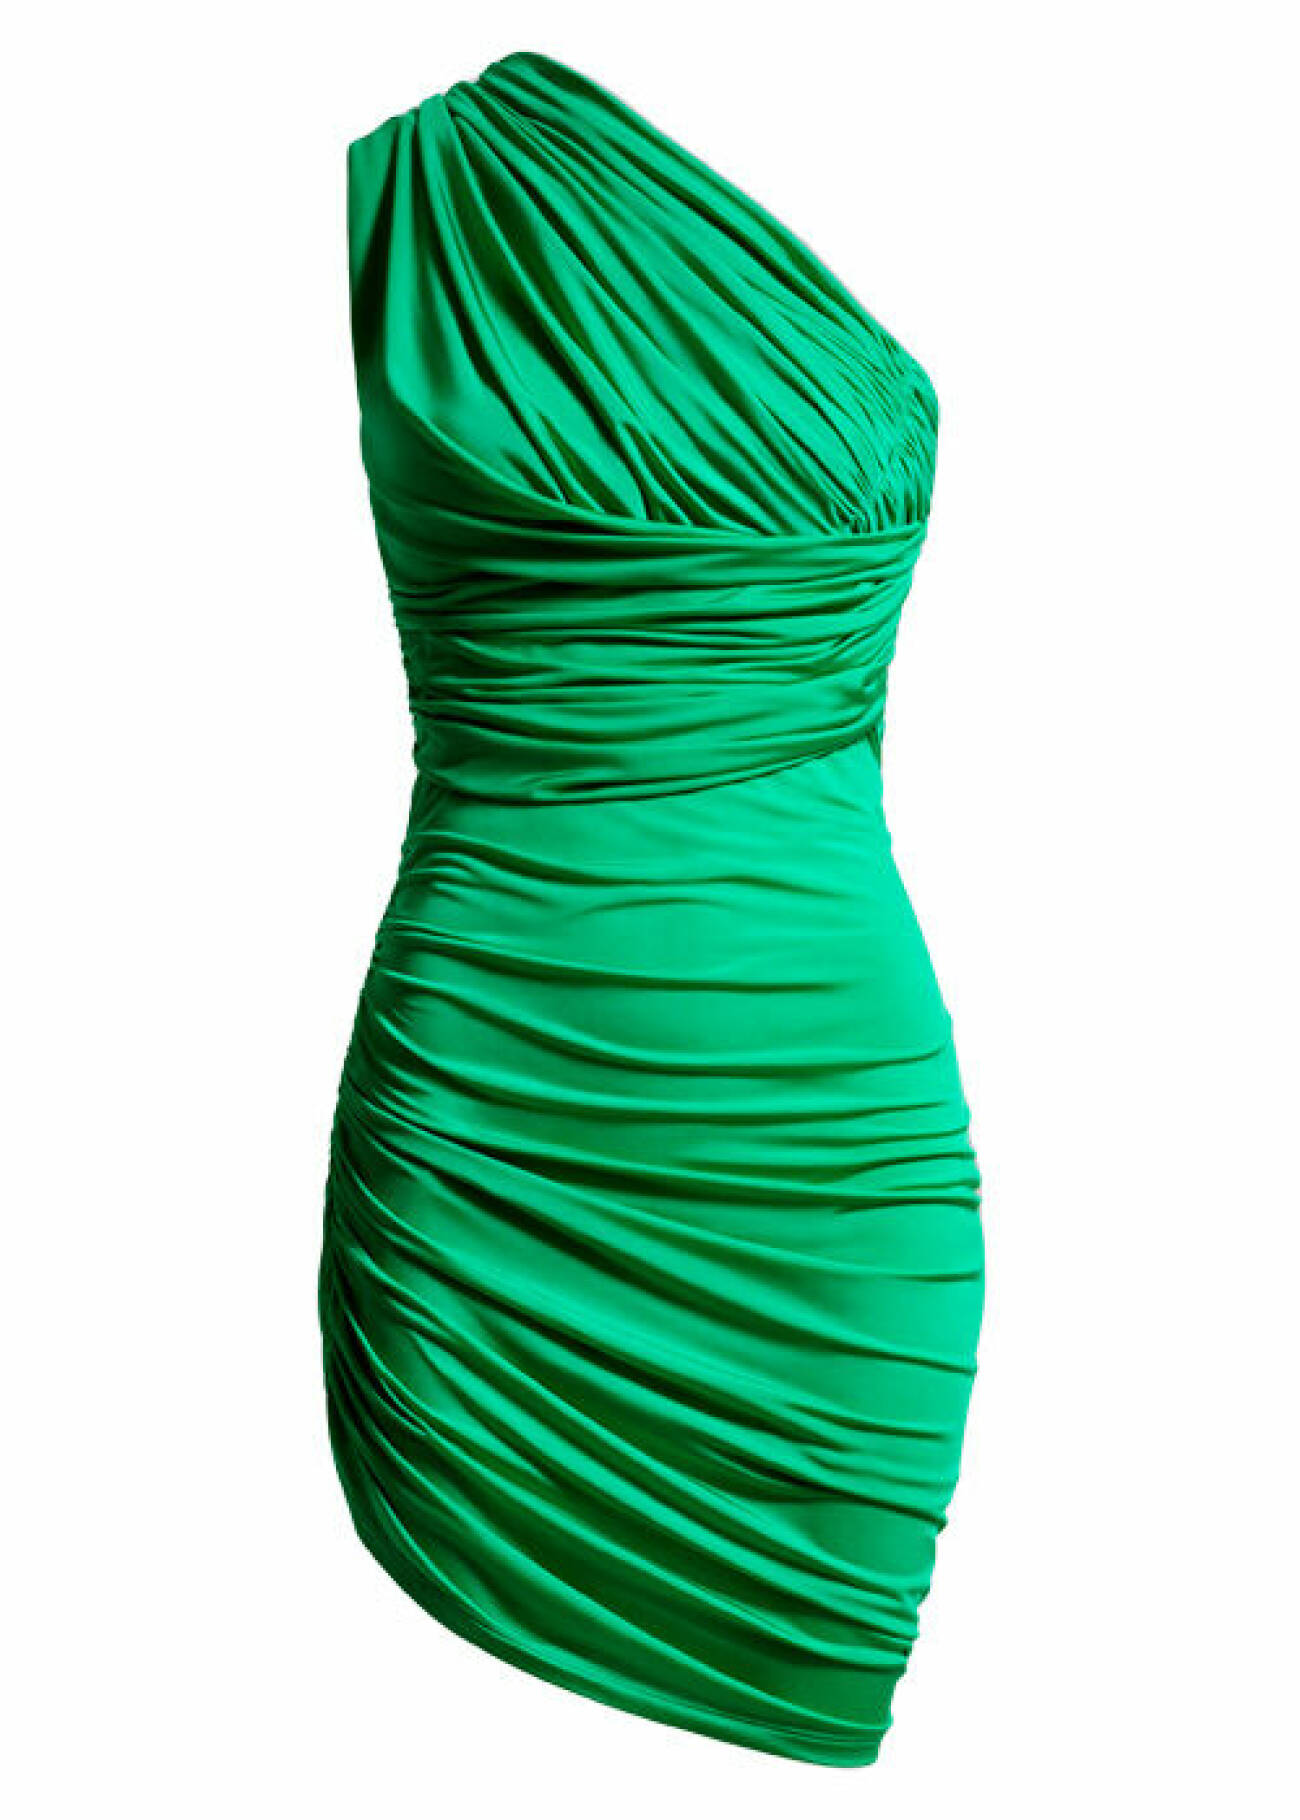 grön off-shoulder klänning från H&amp;M Innovation Stories Metaverse Design Story